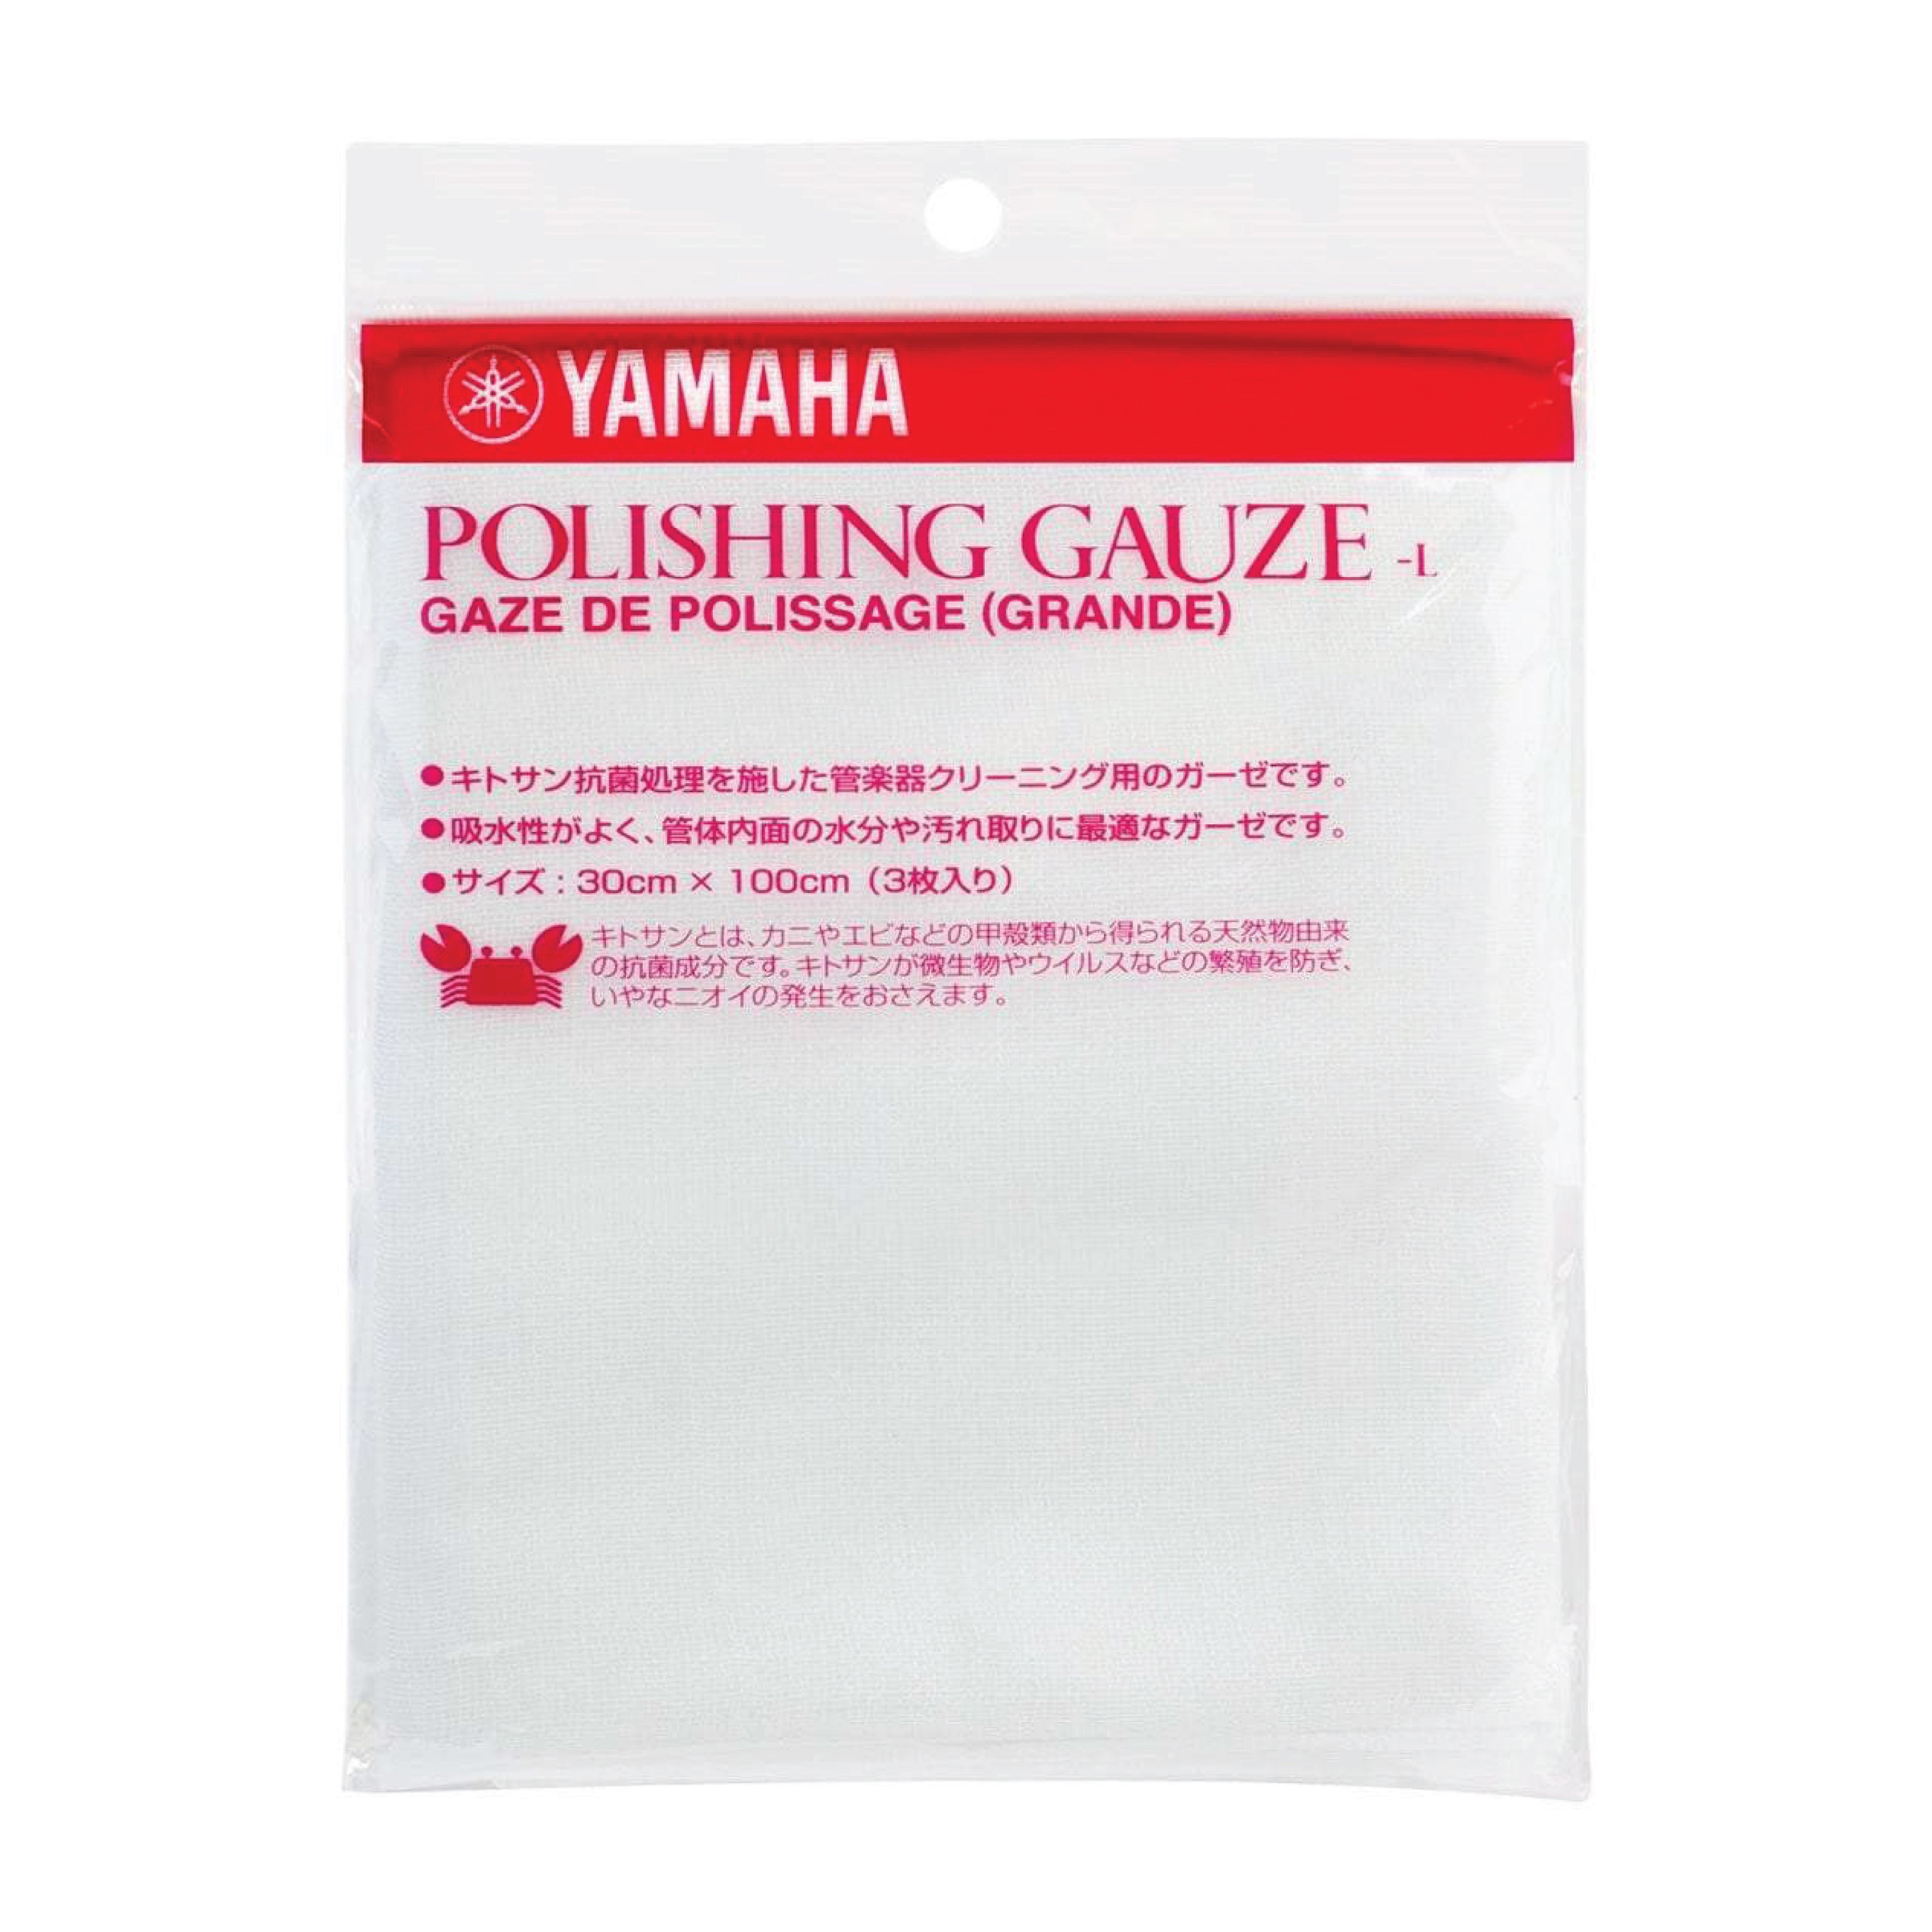 Yamaha Polishing Gauze, Large